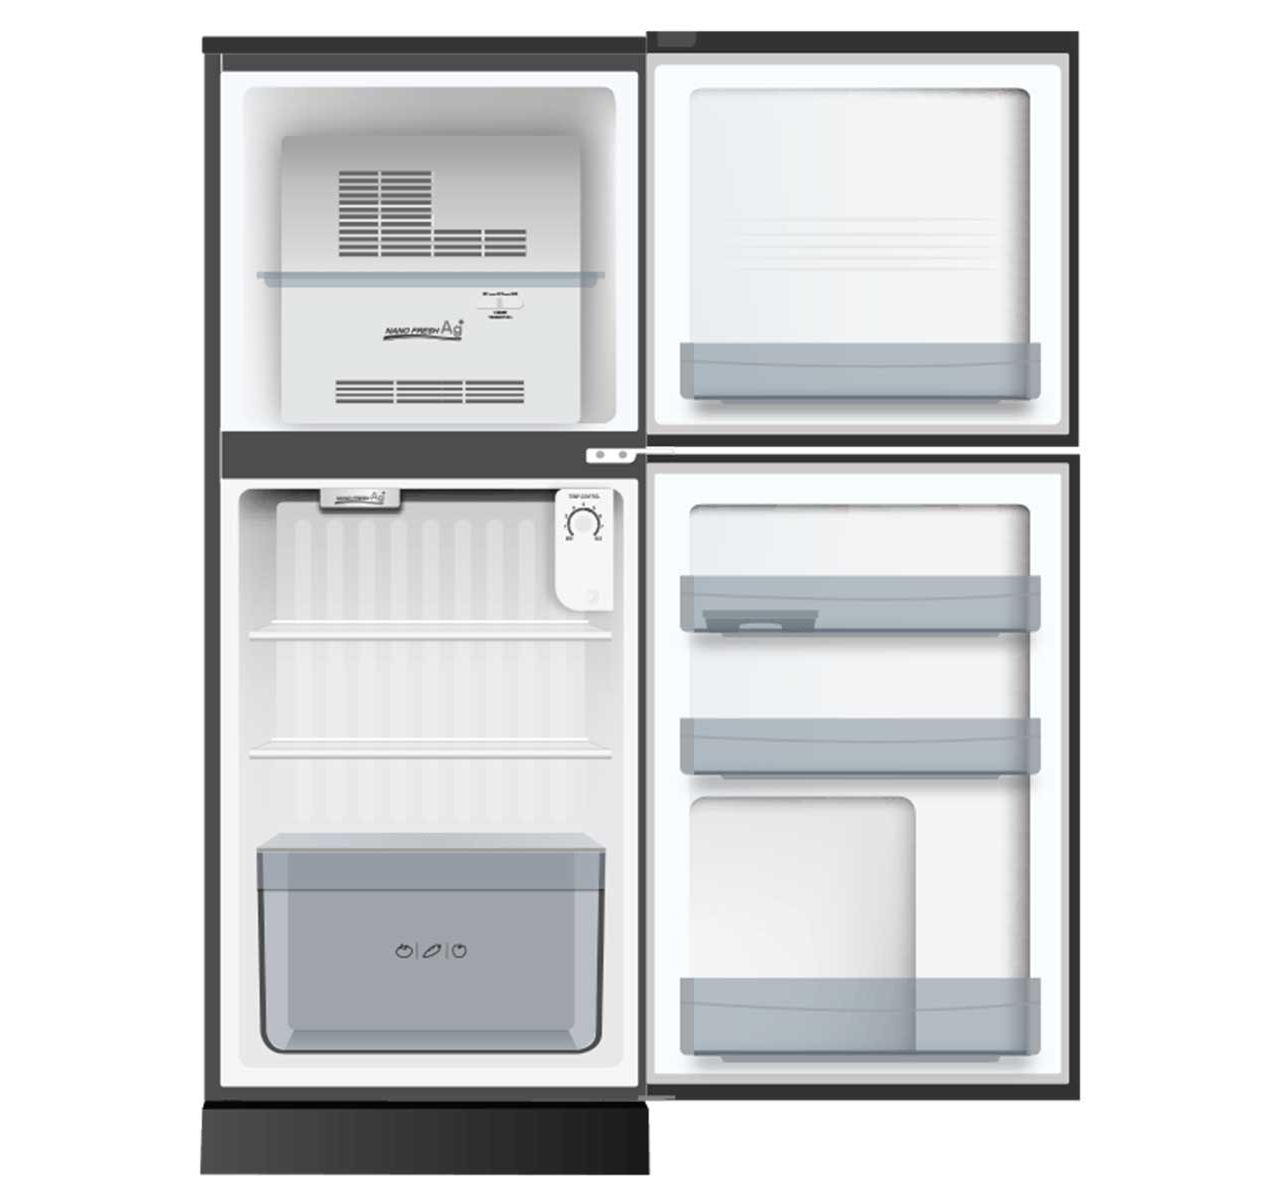 [GIAO HÀNG XUYÊN TẾT][GIAO HCM] [Trả góp 0%] Tủ lạnh Aqua 130 lít AQR-T150FA BS - Công nghệ làm lạnh...